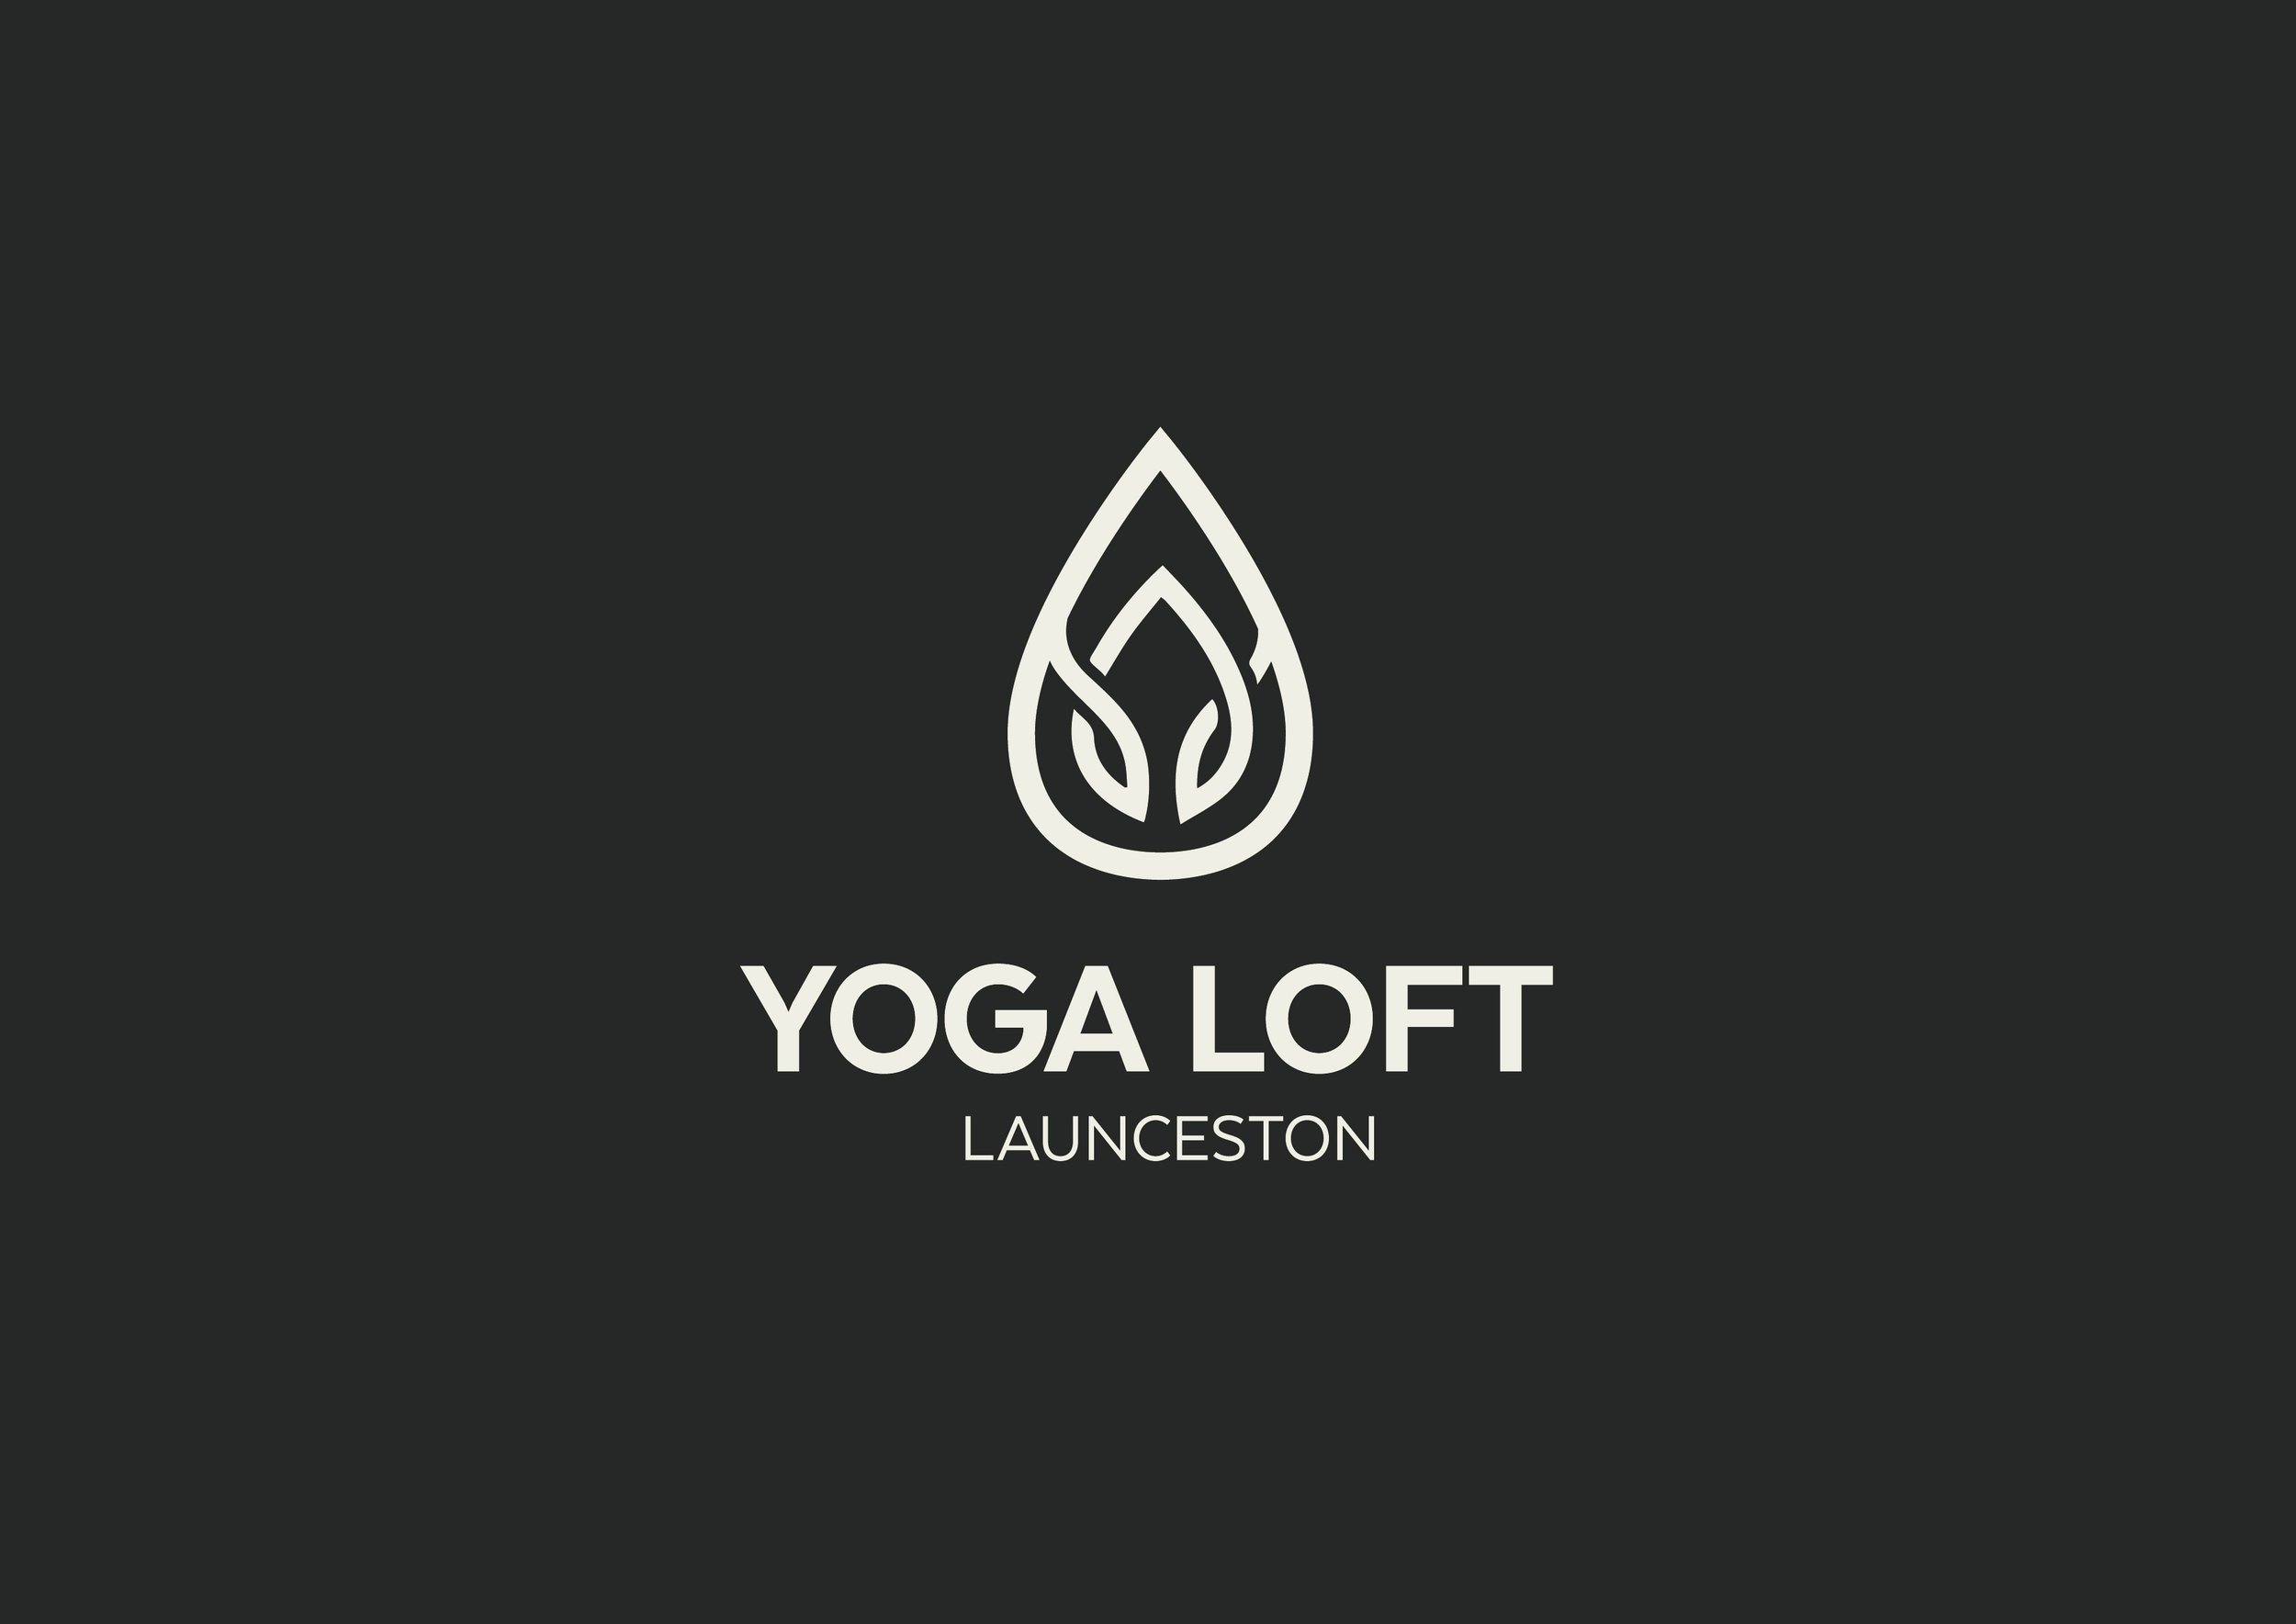 YOGA LOFT logo_dark.jpg